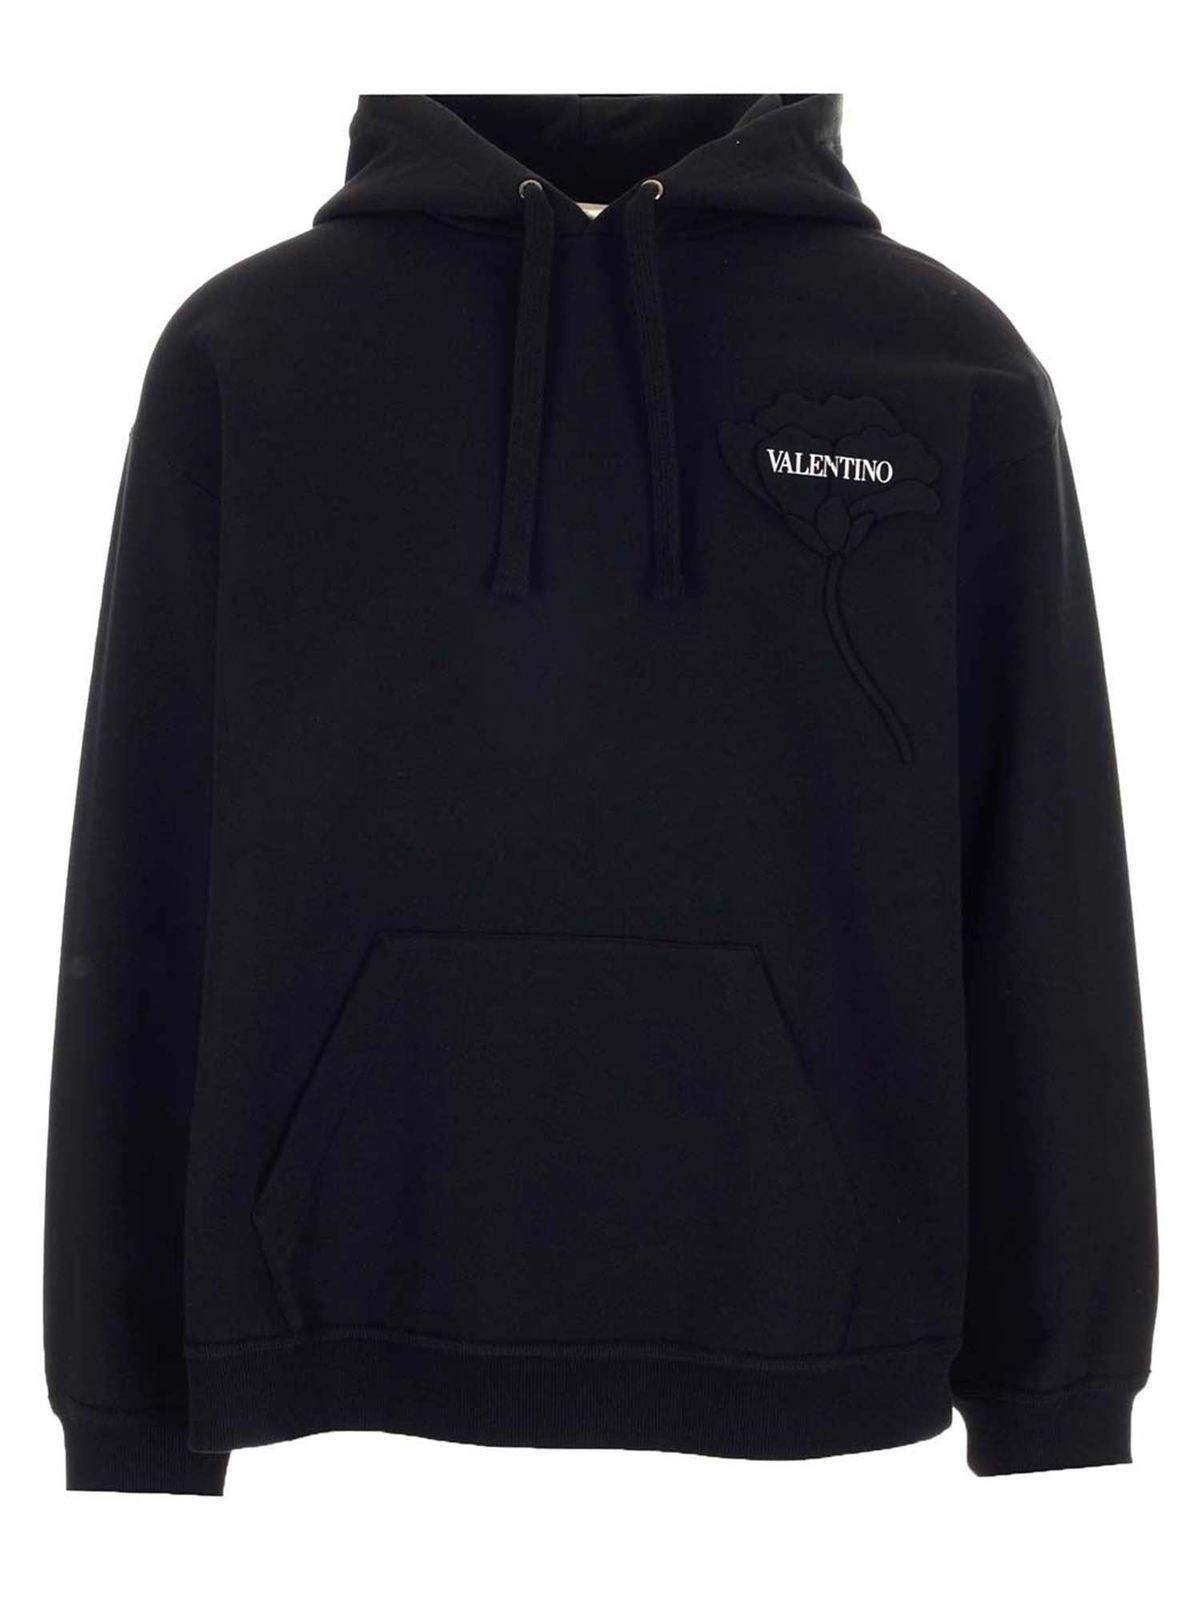 Valentino - Men's Garden hoodie in black - Sweatshirts & Sweaters ...